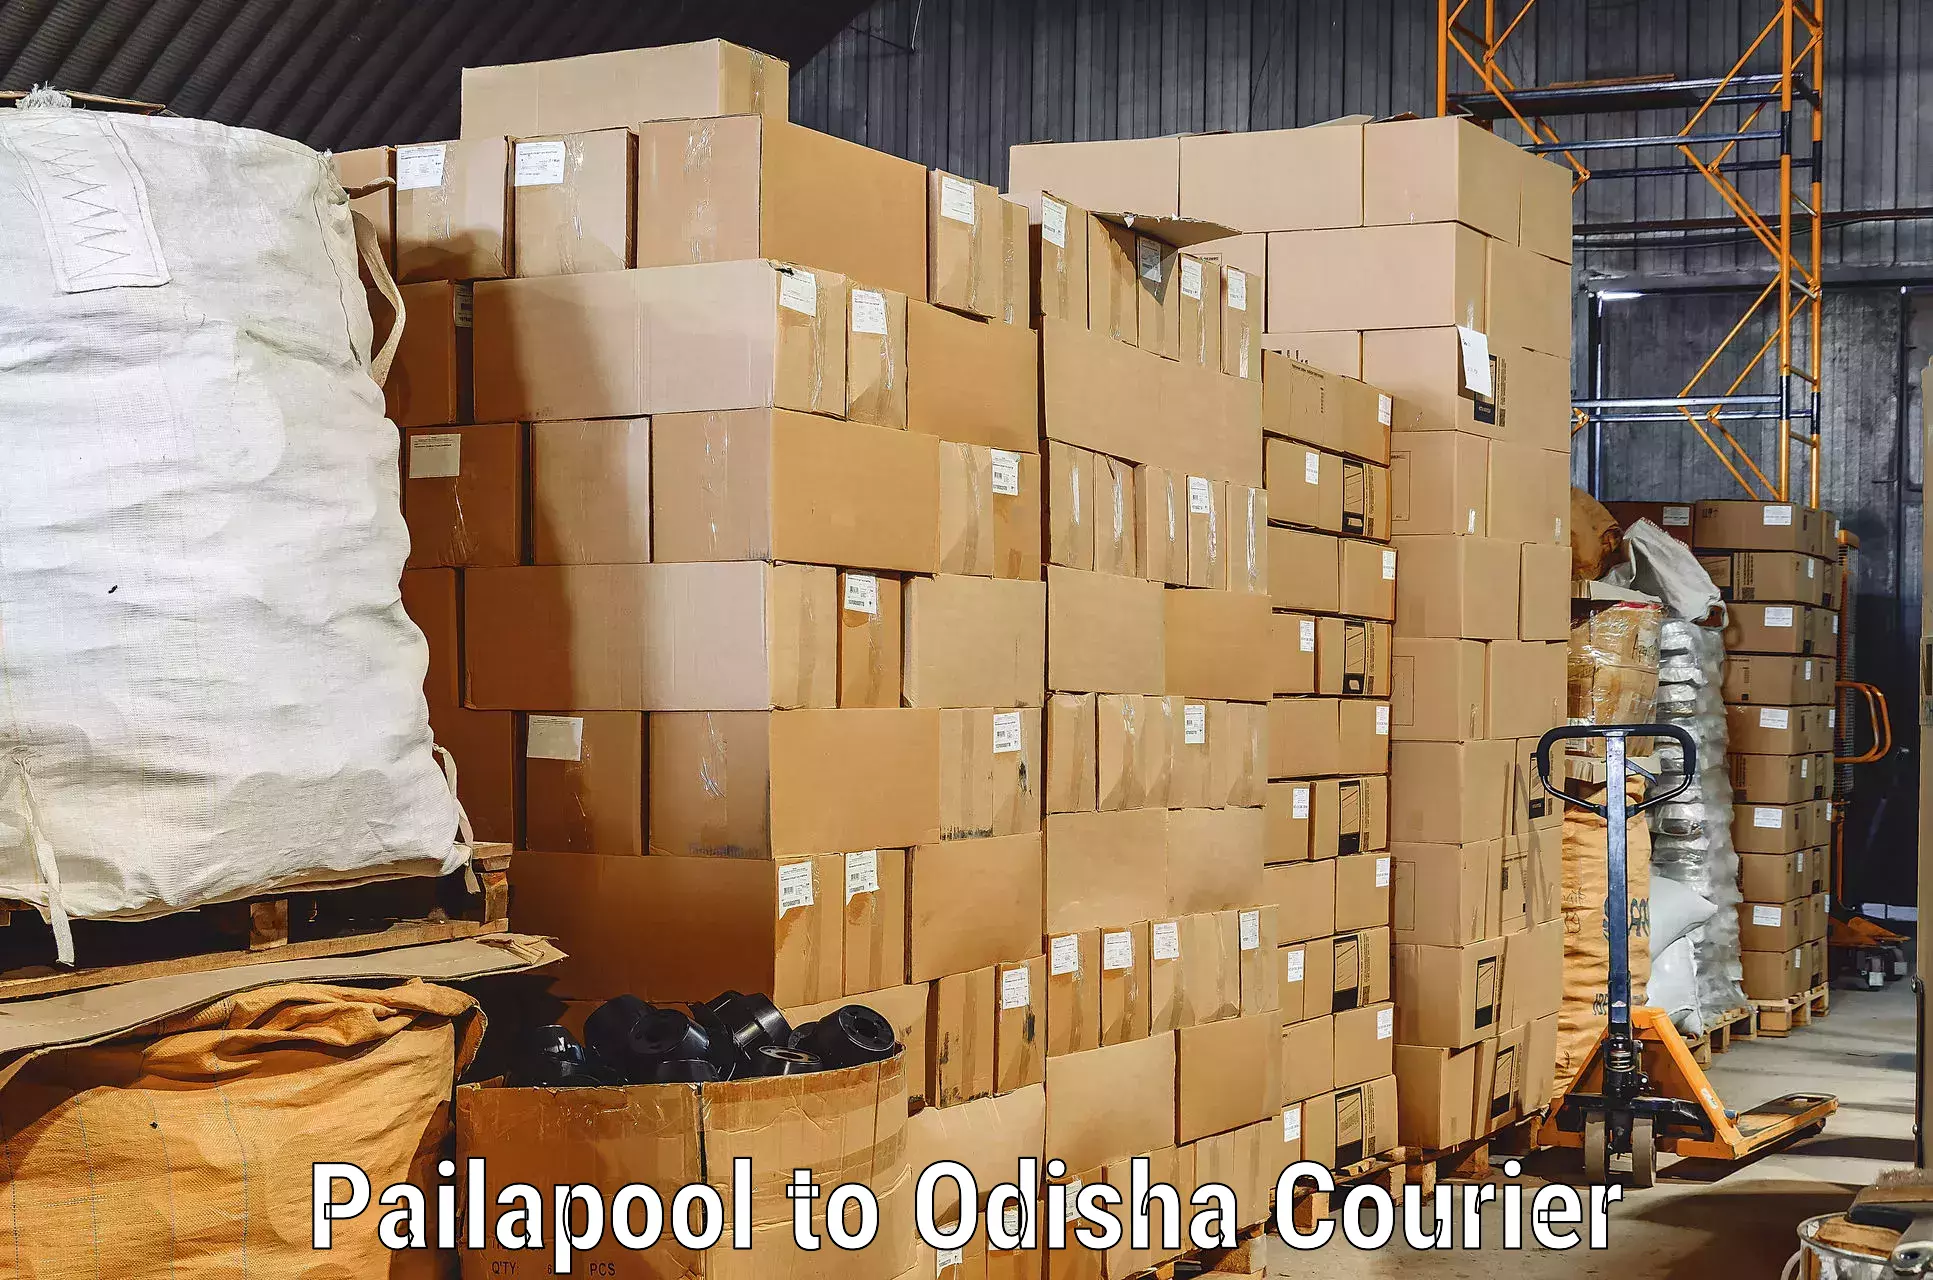 Furniture transport professionals Pailapool to Bhadrak